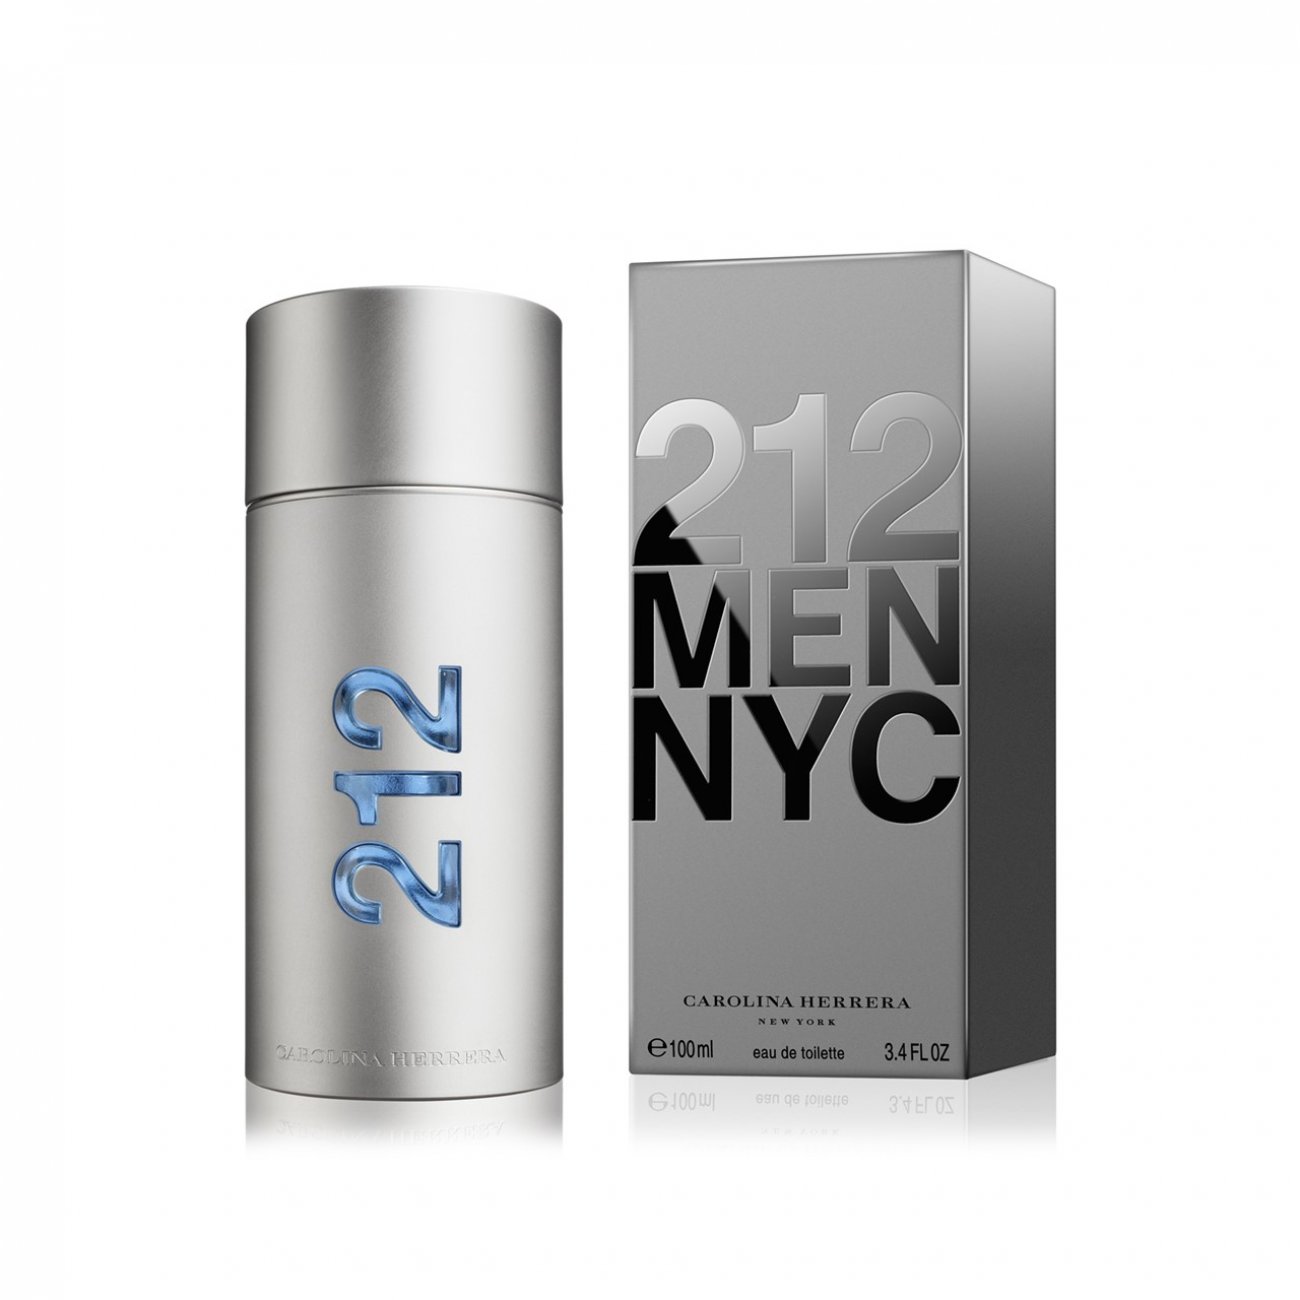 Buy Carolina Herrera 212 NYC Men Eau de Toilette · Iceland